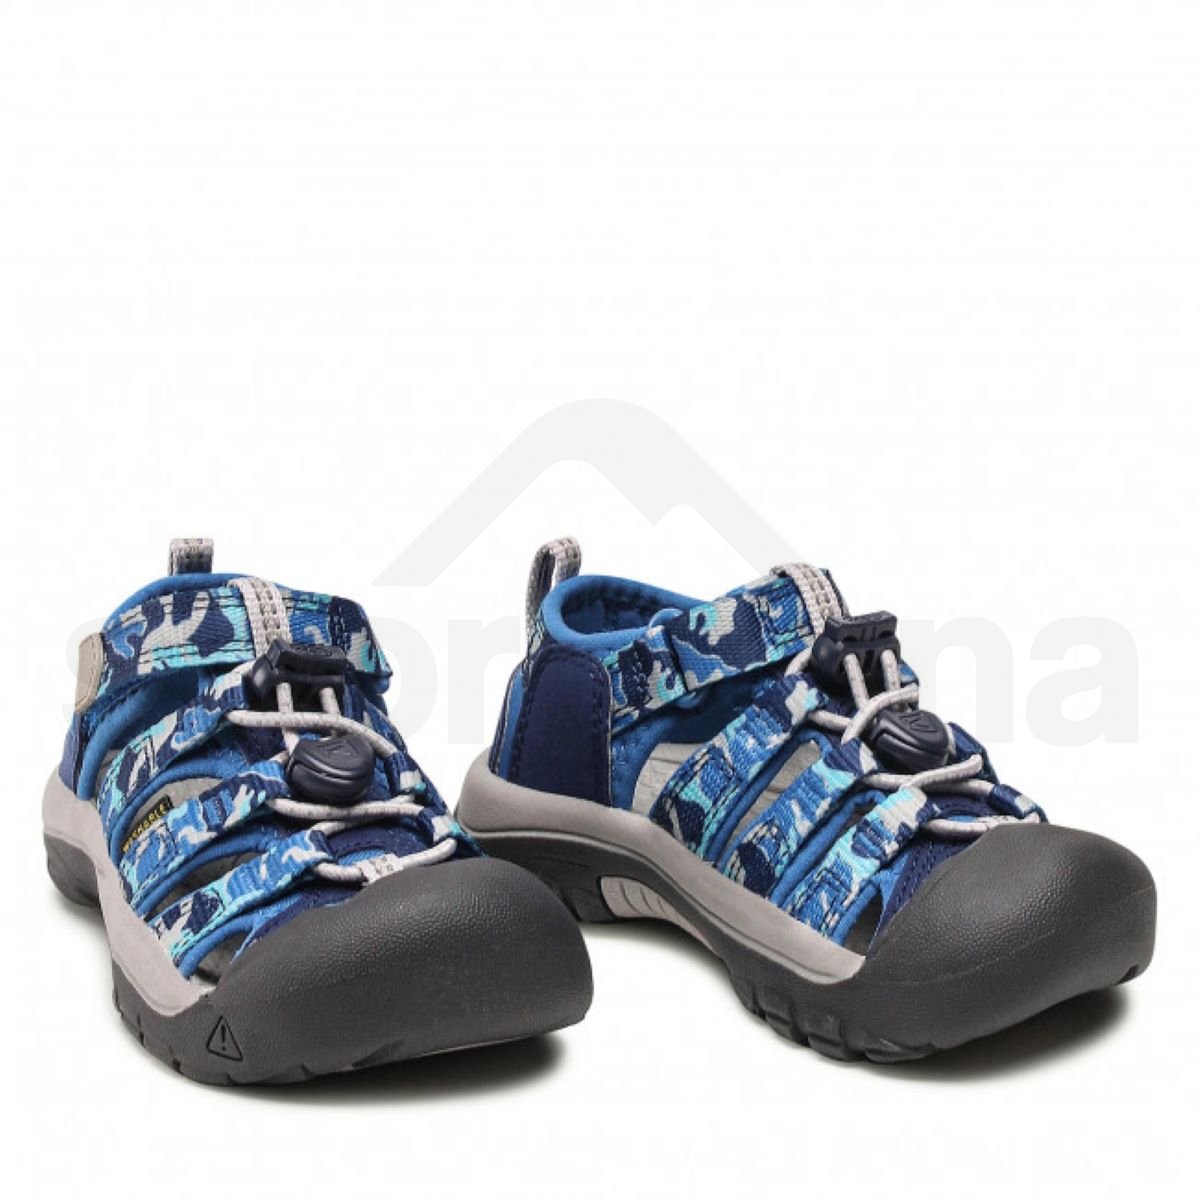 Obuv - sandály Keen Newport H2 K - světle modrá/tmavě modrá